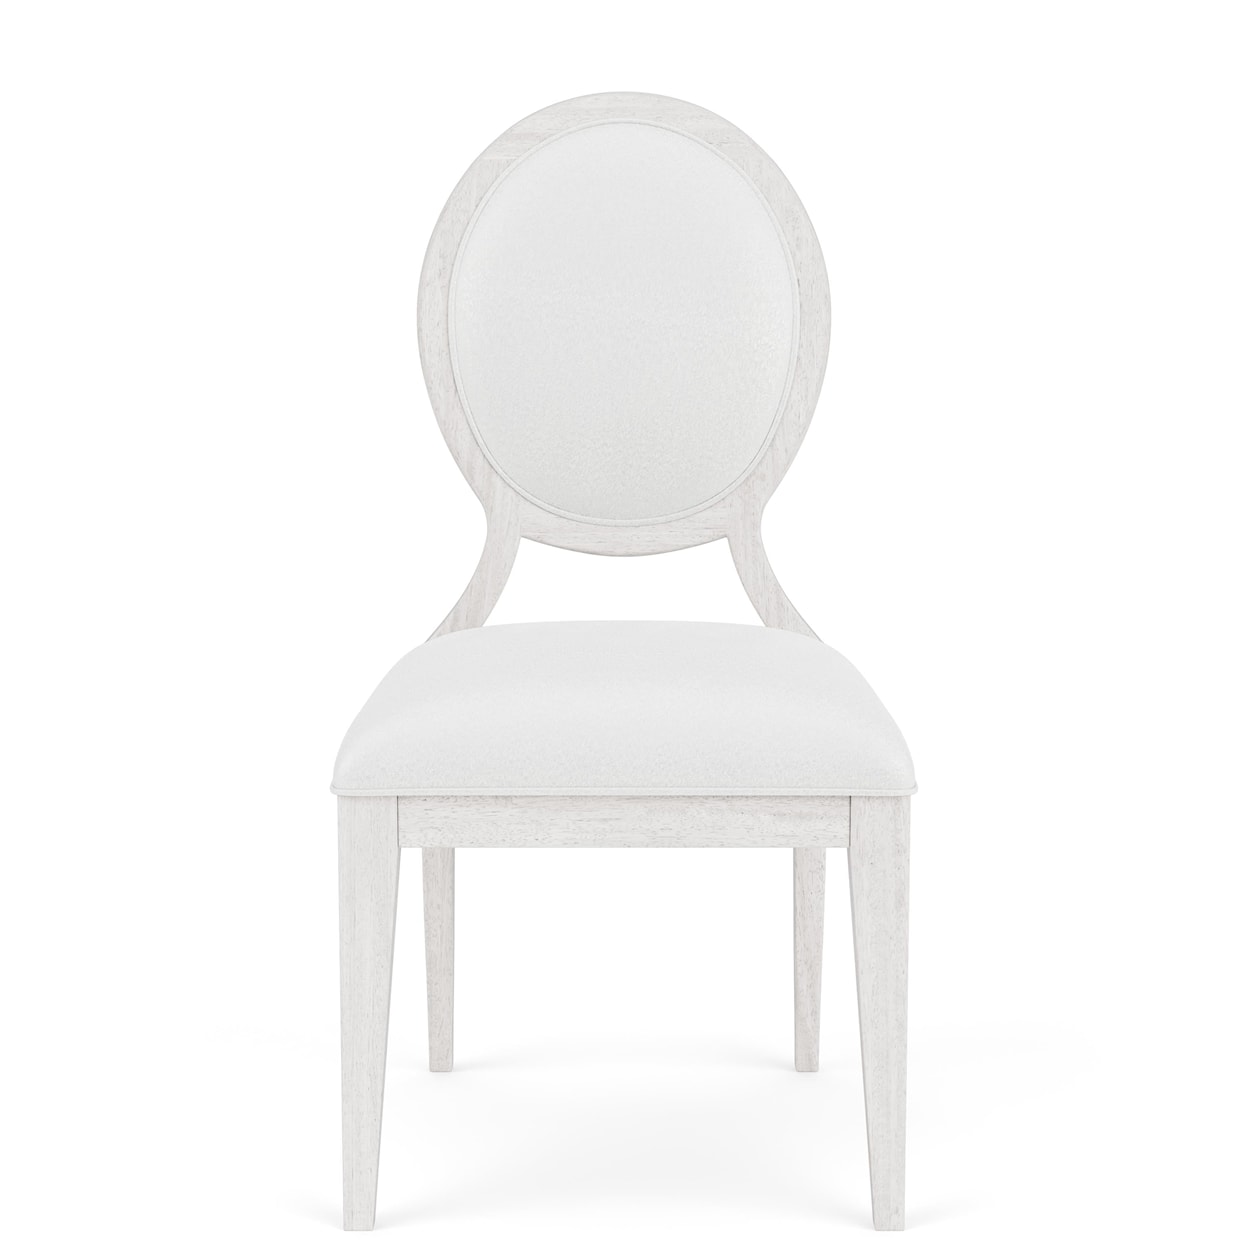 Riverside Furniture Hepburn Upholstered Side Chair